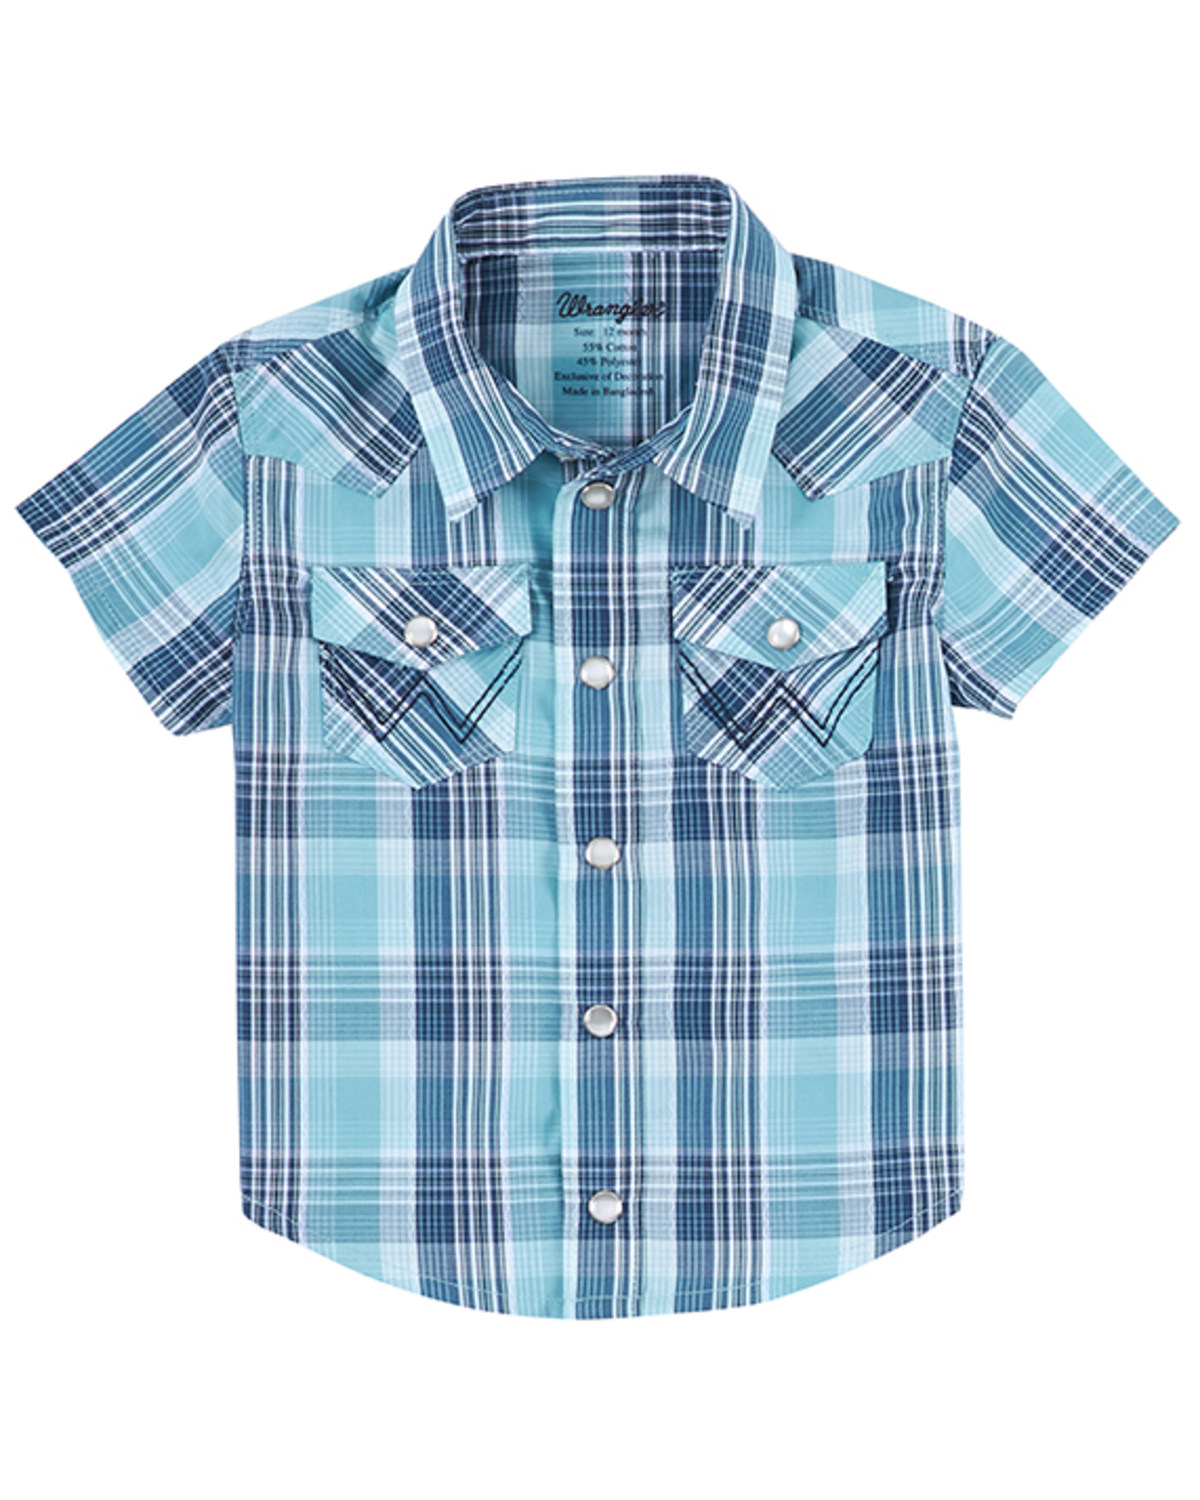 Wrangler Boys' Short Sleeve Blue Woven Shirt 